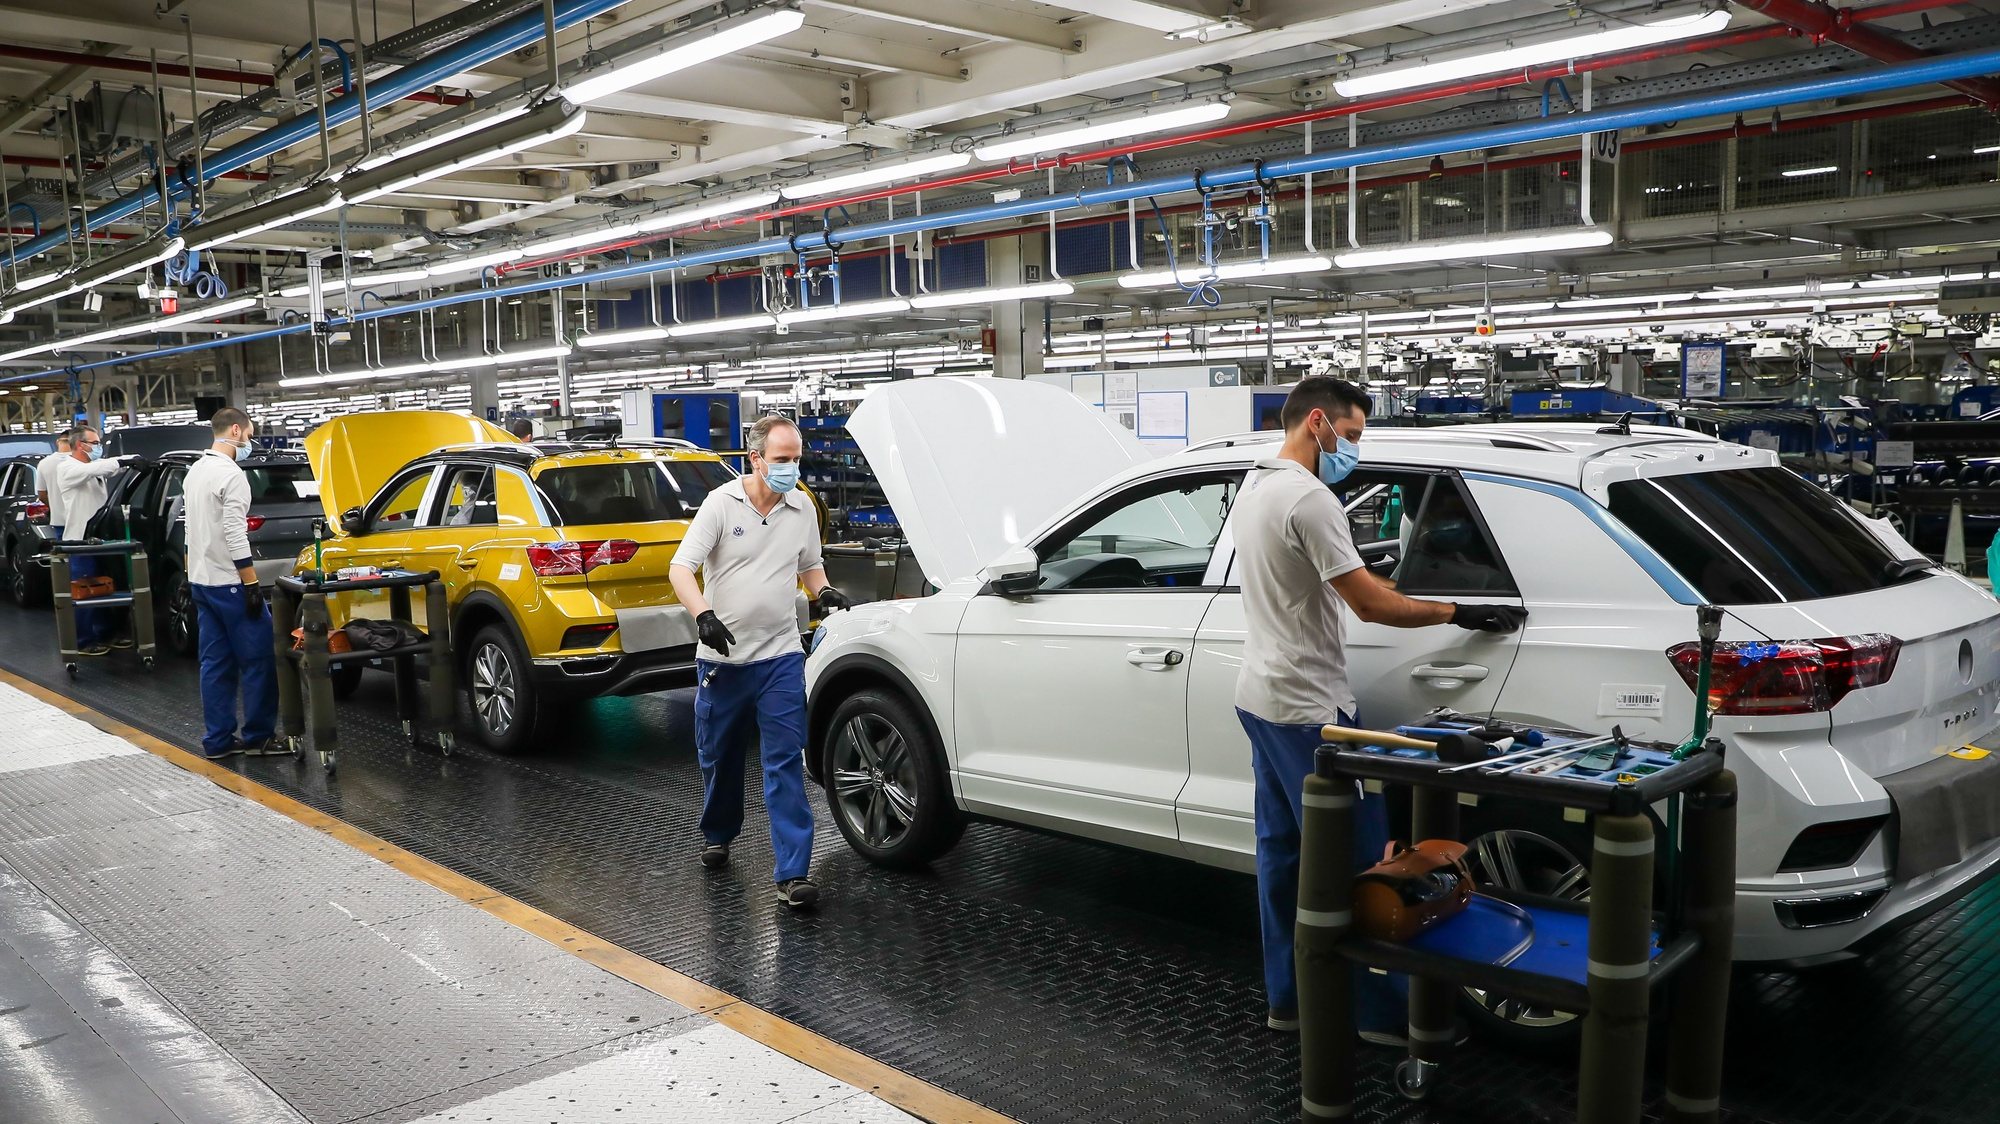 Funcionários da Autoeuropa trabalham na construção do Volkswagen T-Roc na fábrica da Autoeuropa, em Palmela, 13 de maio de 2020. JOSÉ SENA GOULÃO/LUSA